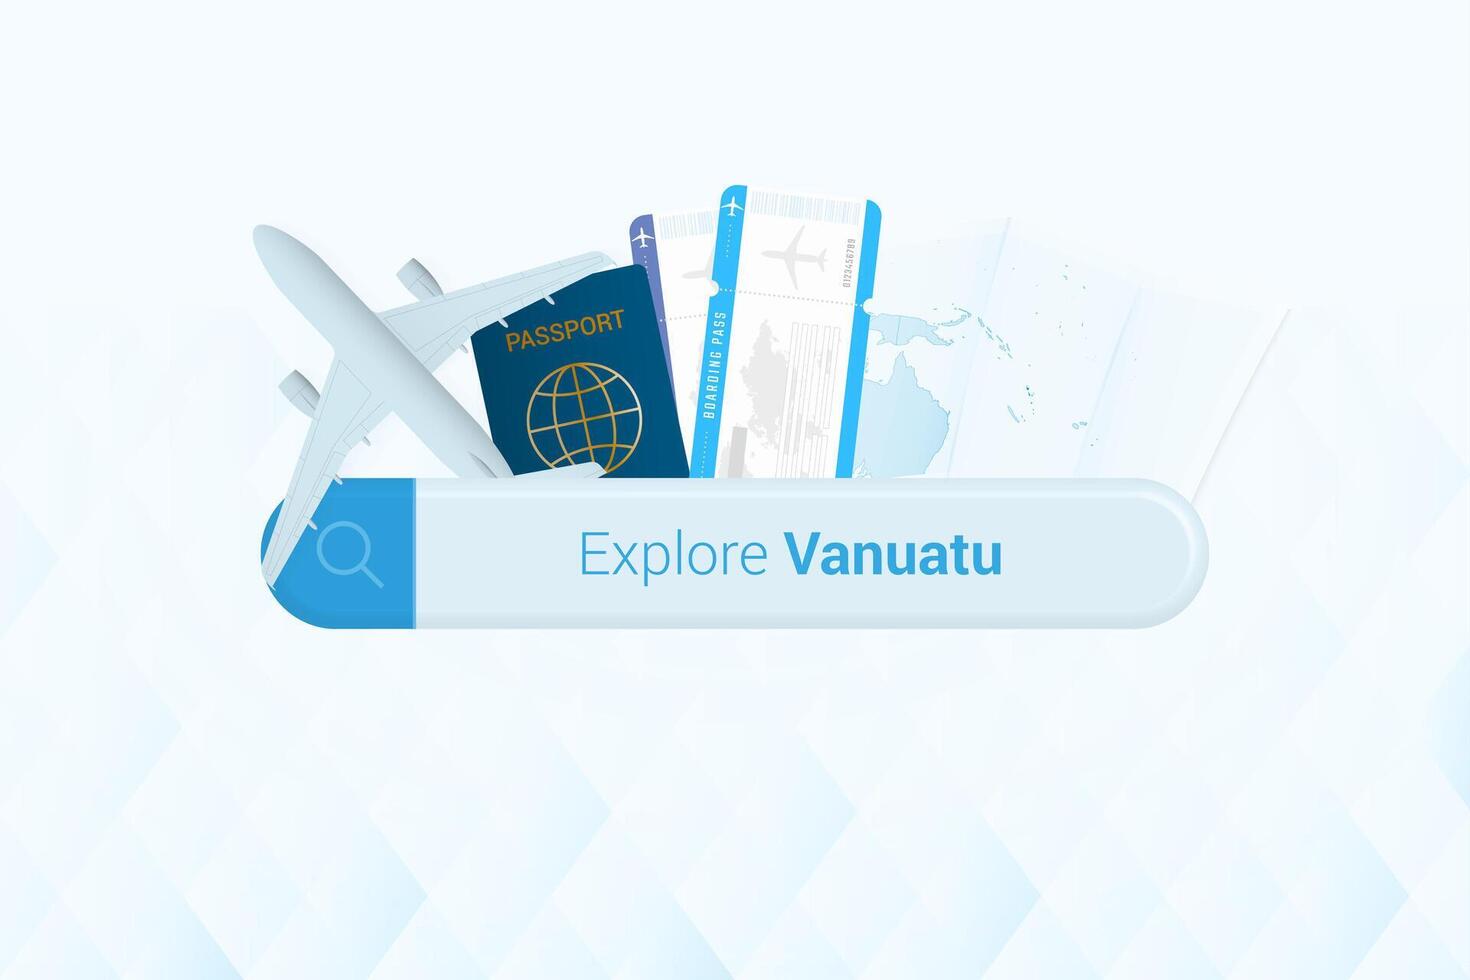 suchen Tickets zu Vanuatu oder Reise Ziel im Vanuatu. suchen Bar mit Flugzeug, Reisepass, Einsteigen passieren, Tickets und Karte. vektor